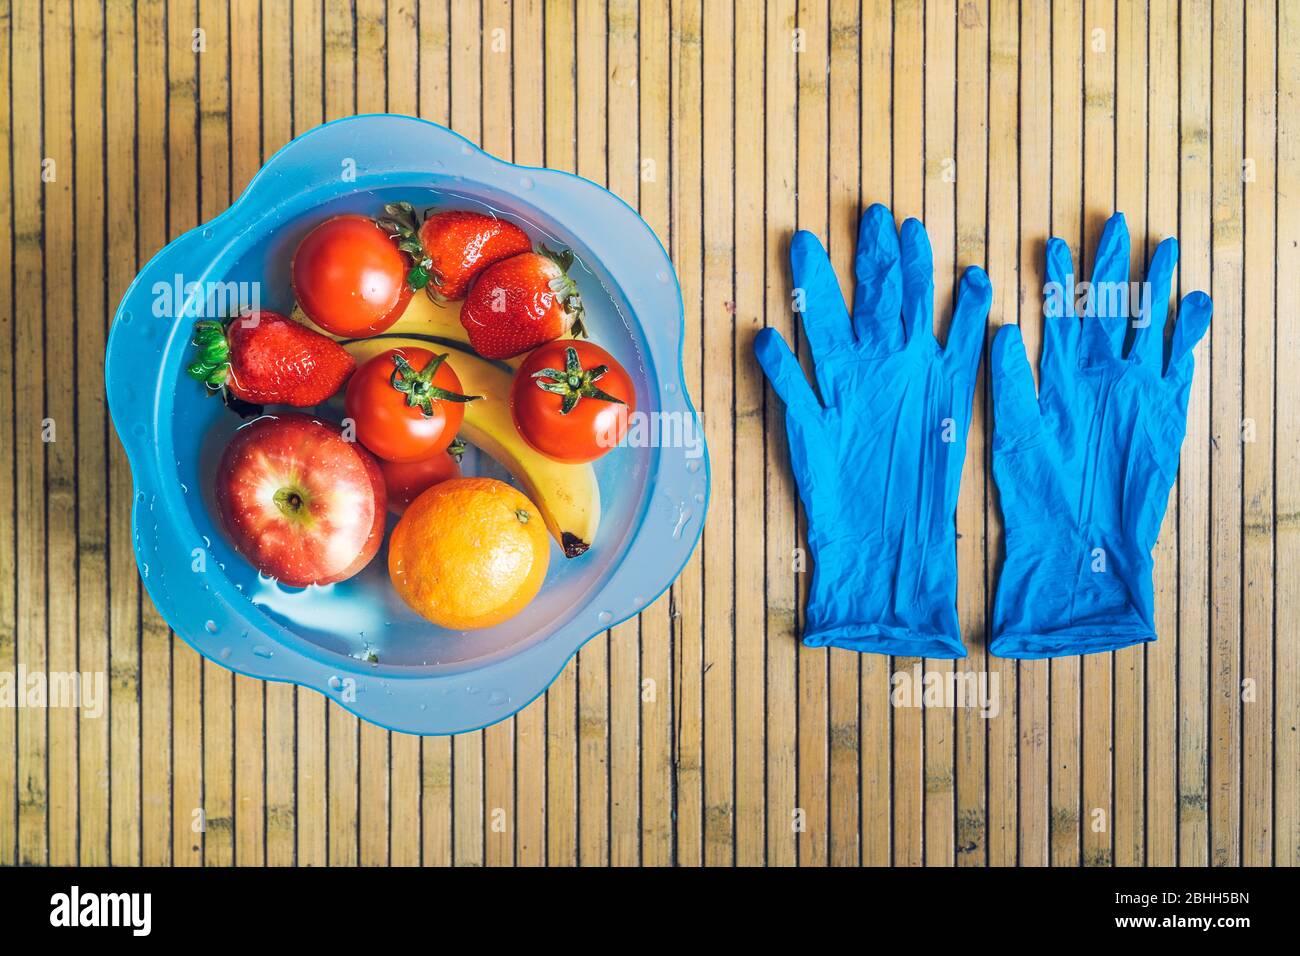 Ciotola blu con frutta fresca e pulita su una base di legno con guanti in lattice blu. Banane, pomodori, mele, fragole e arance immerse Foto Stock